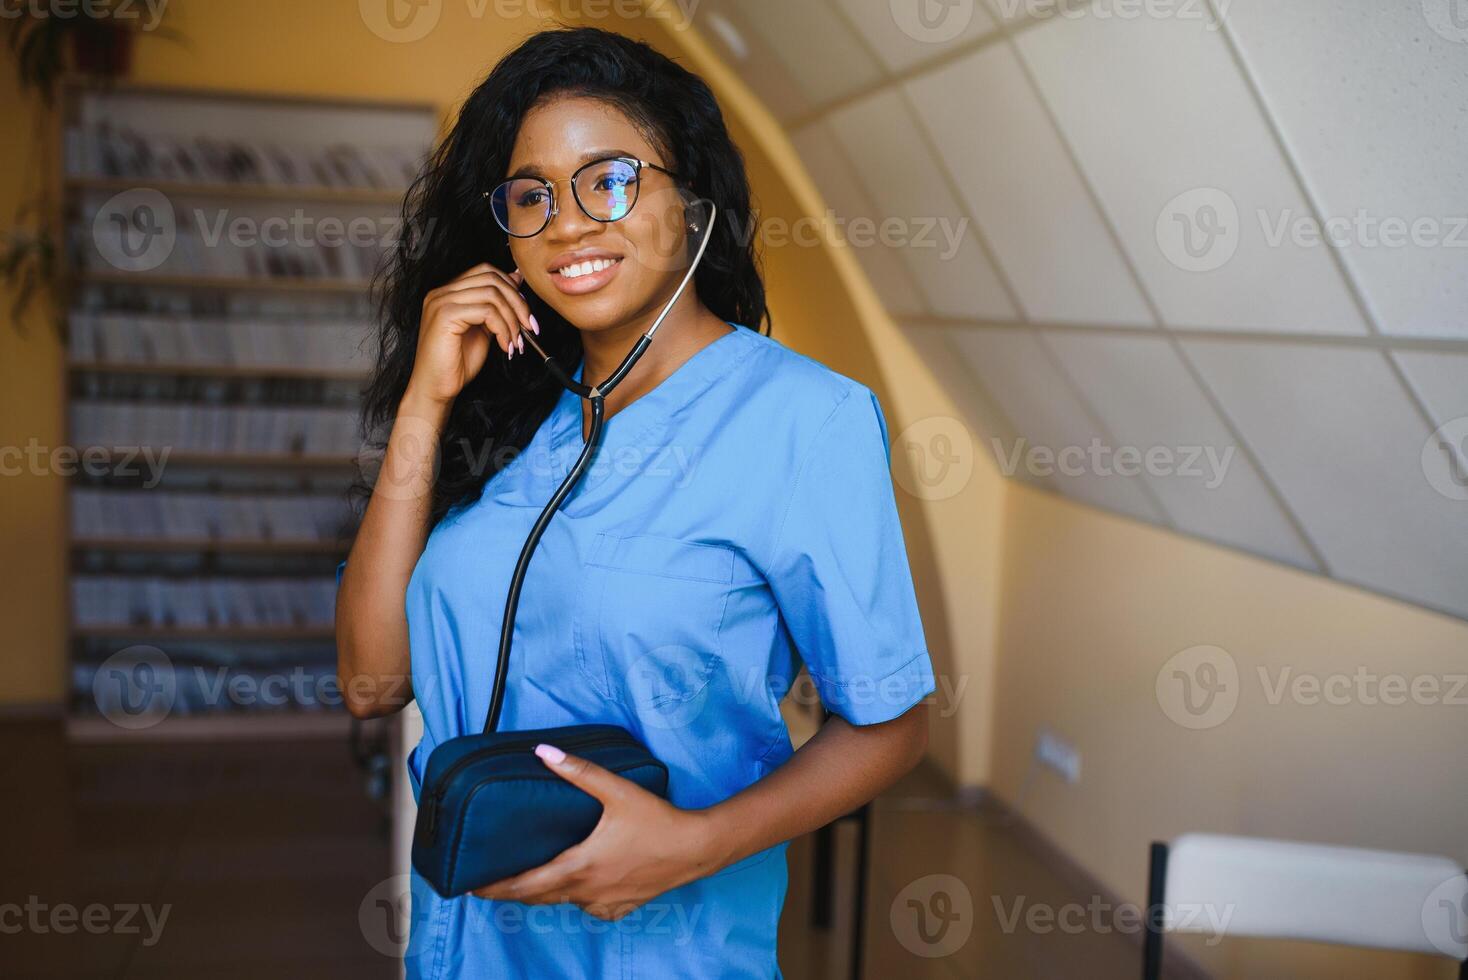 attraktiv kvinna afrikansk amerikan medicinsk professionell i kontor foto